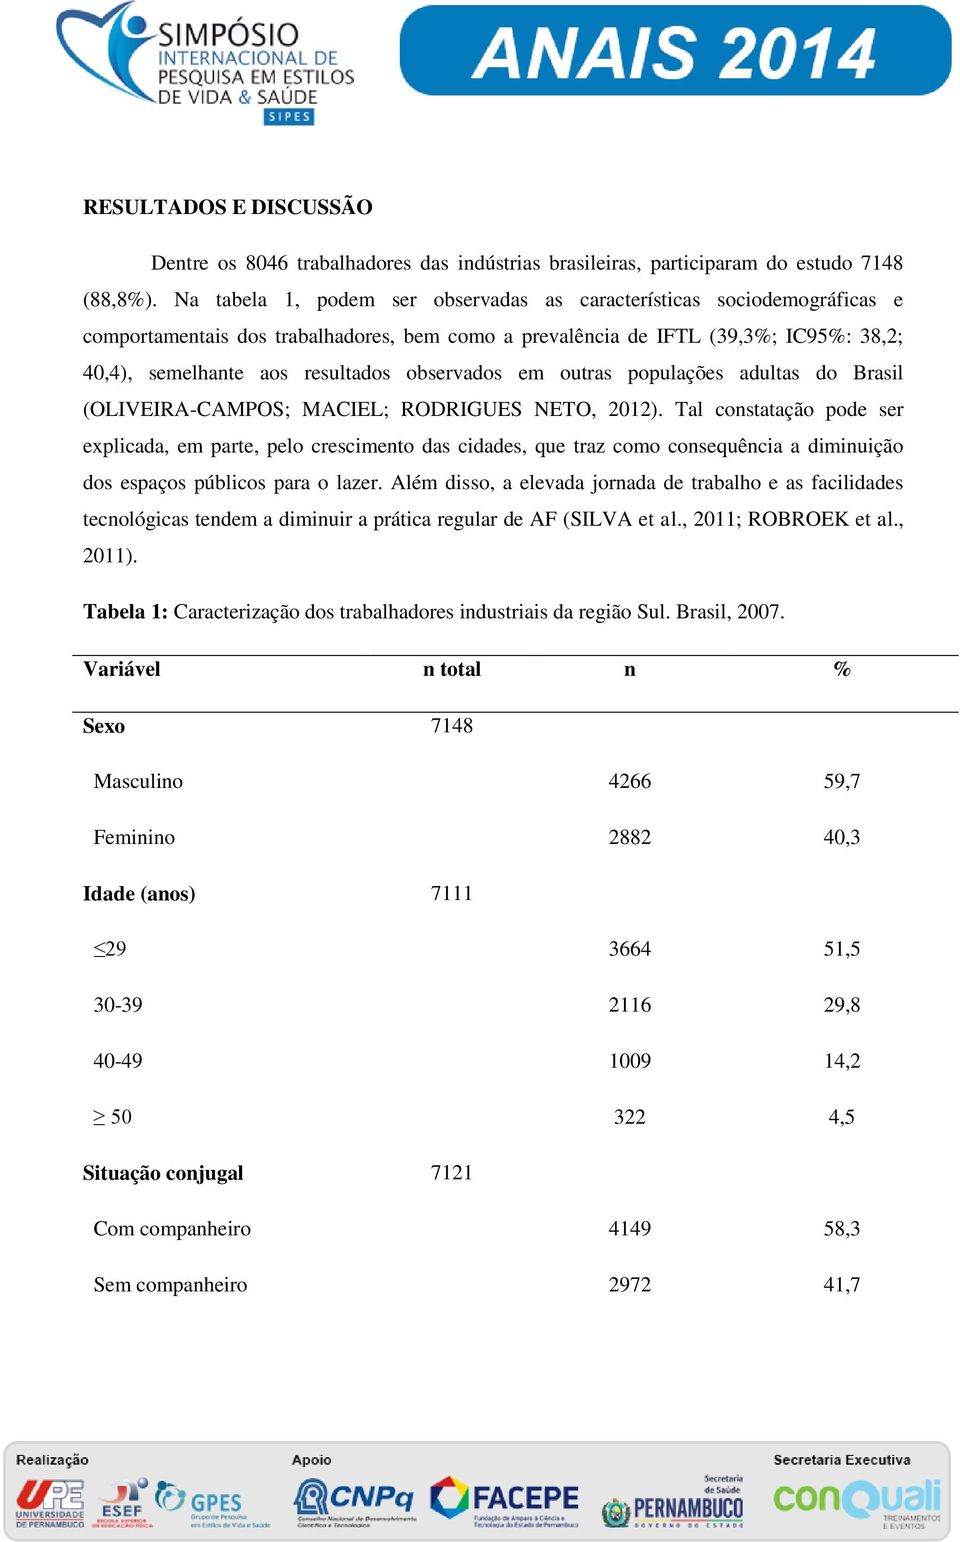 observados em outras populações adultas do Brasil (OLIVEIRA-CAMPOS; MACIEL; RODRIGUES NETO, 2012).